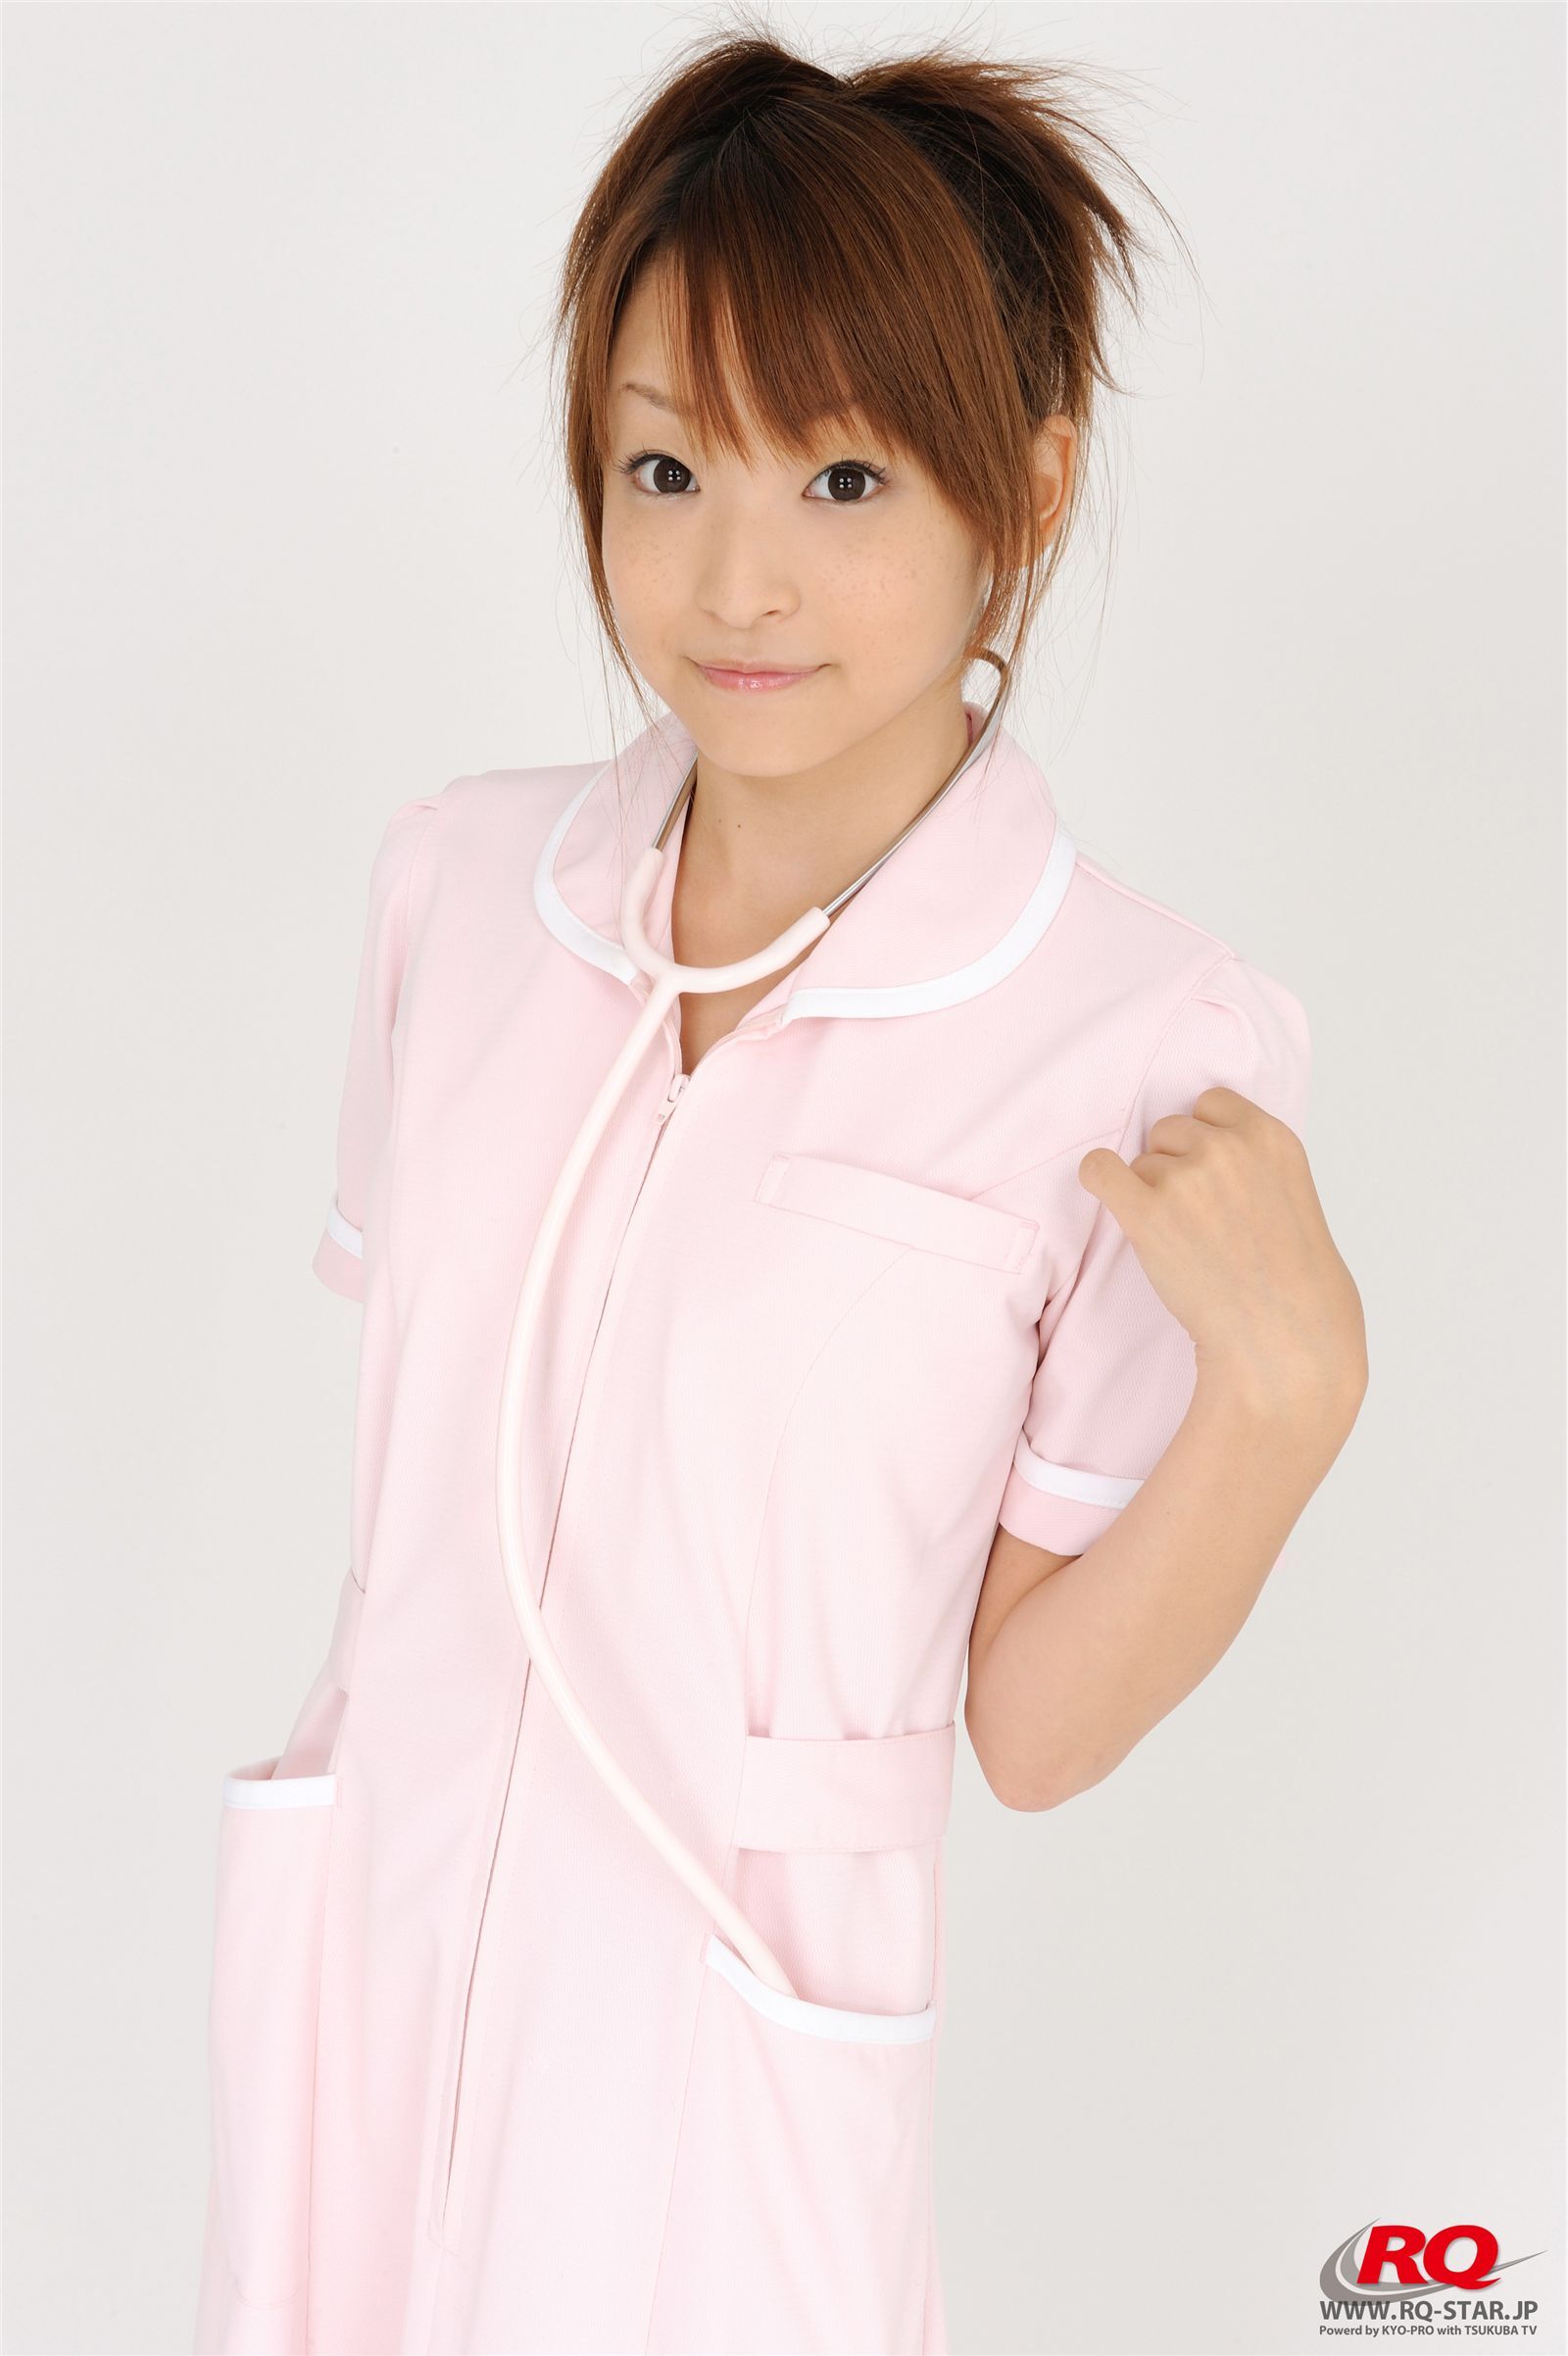 青木未央 Mio Aoki NO.00083 RQ-STAR 日本高清制服美女写真